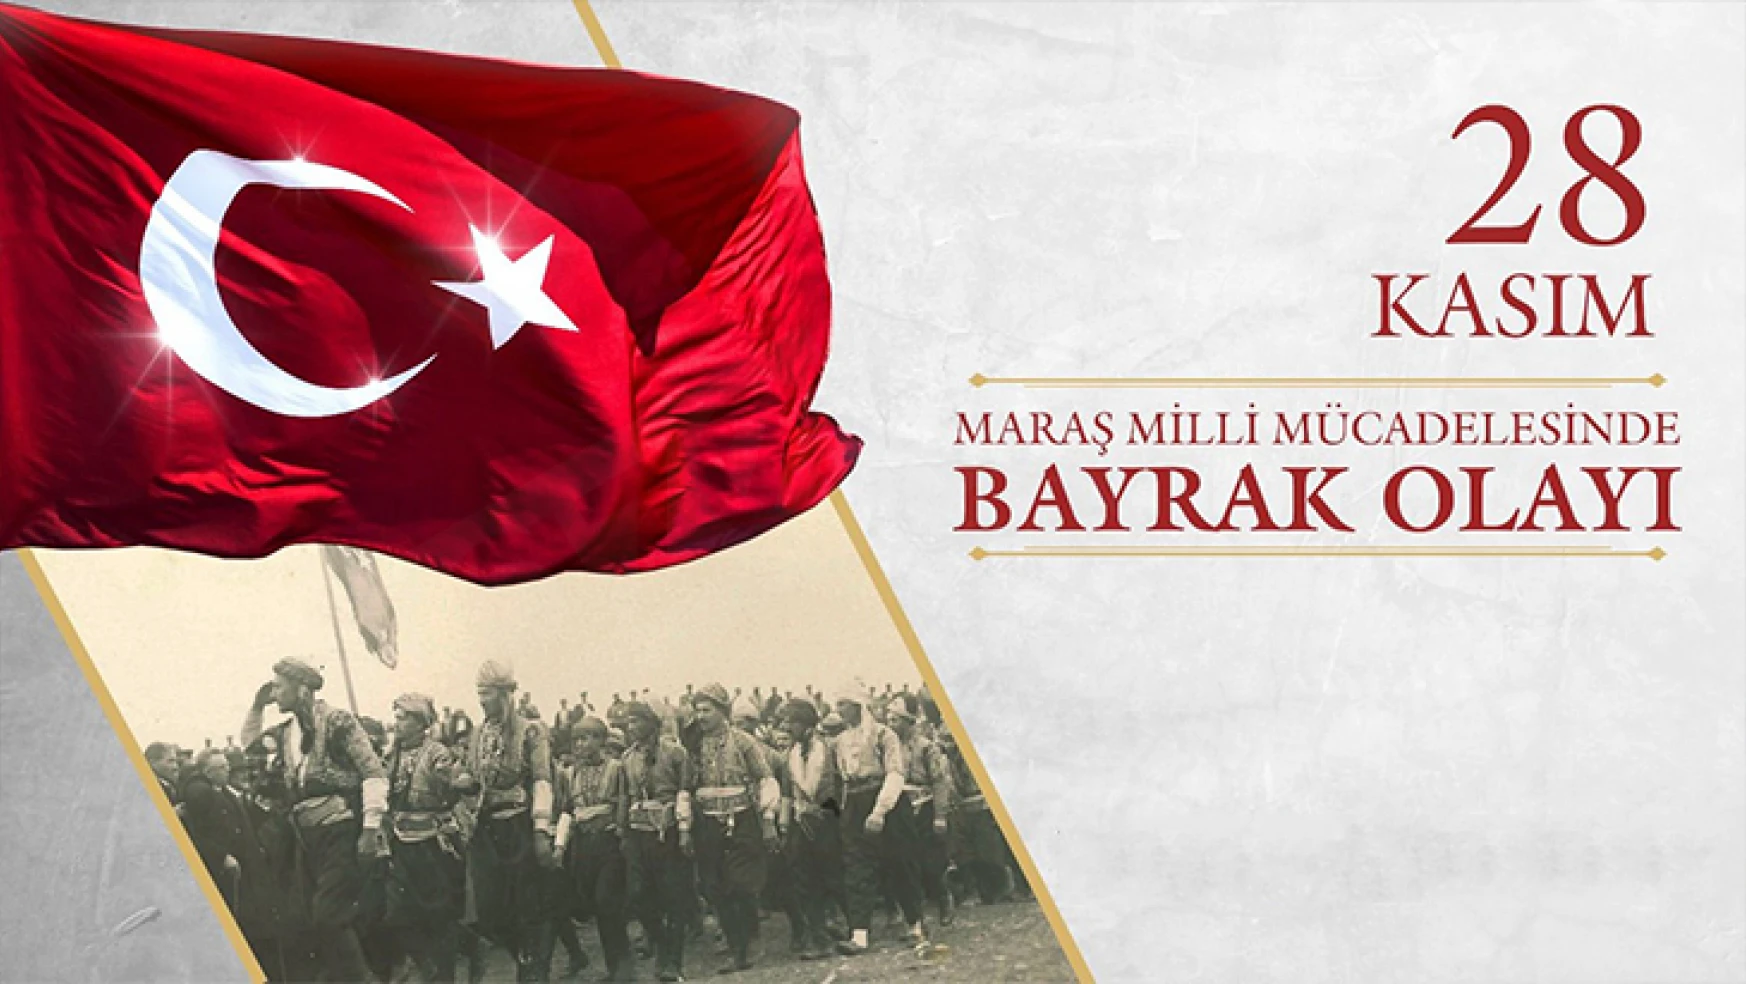 Kahramanmaraş 'Bayrak Olayı'nı kutlayacak